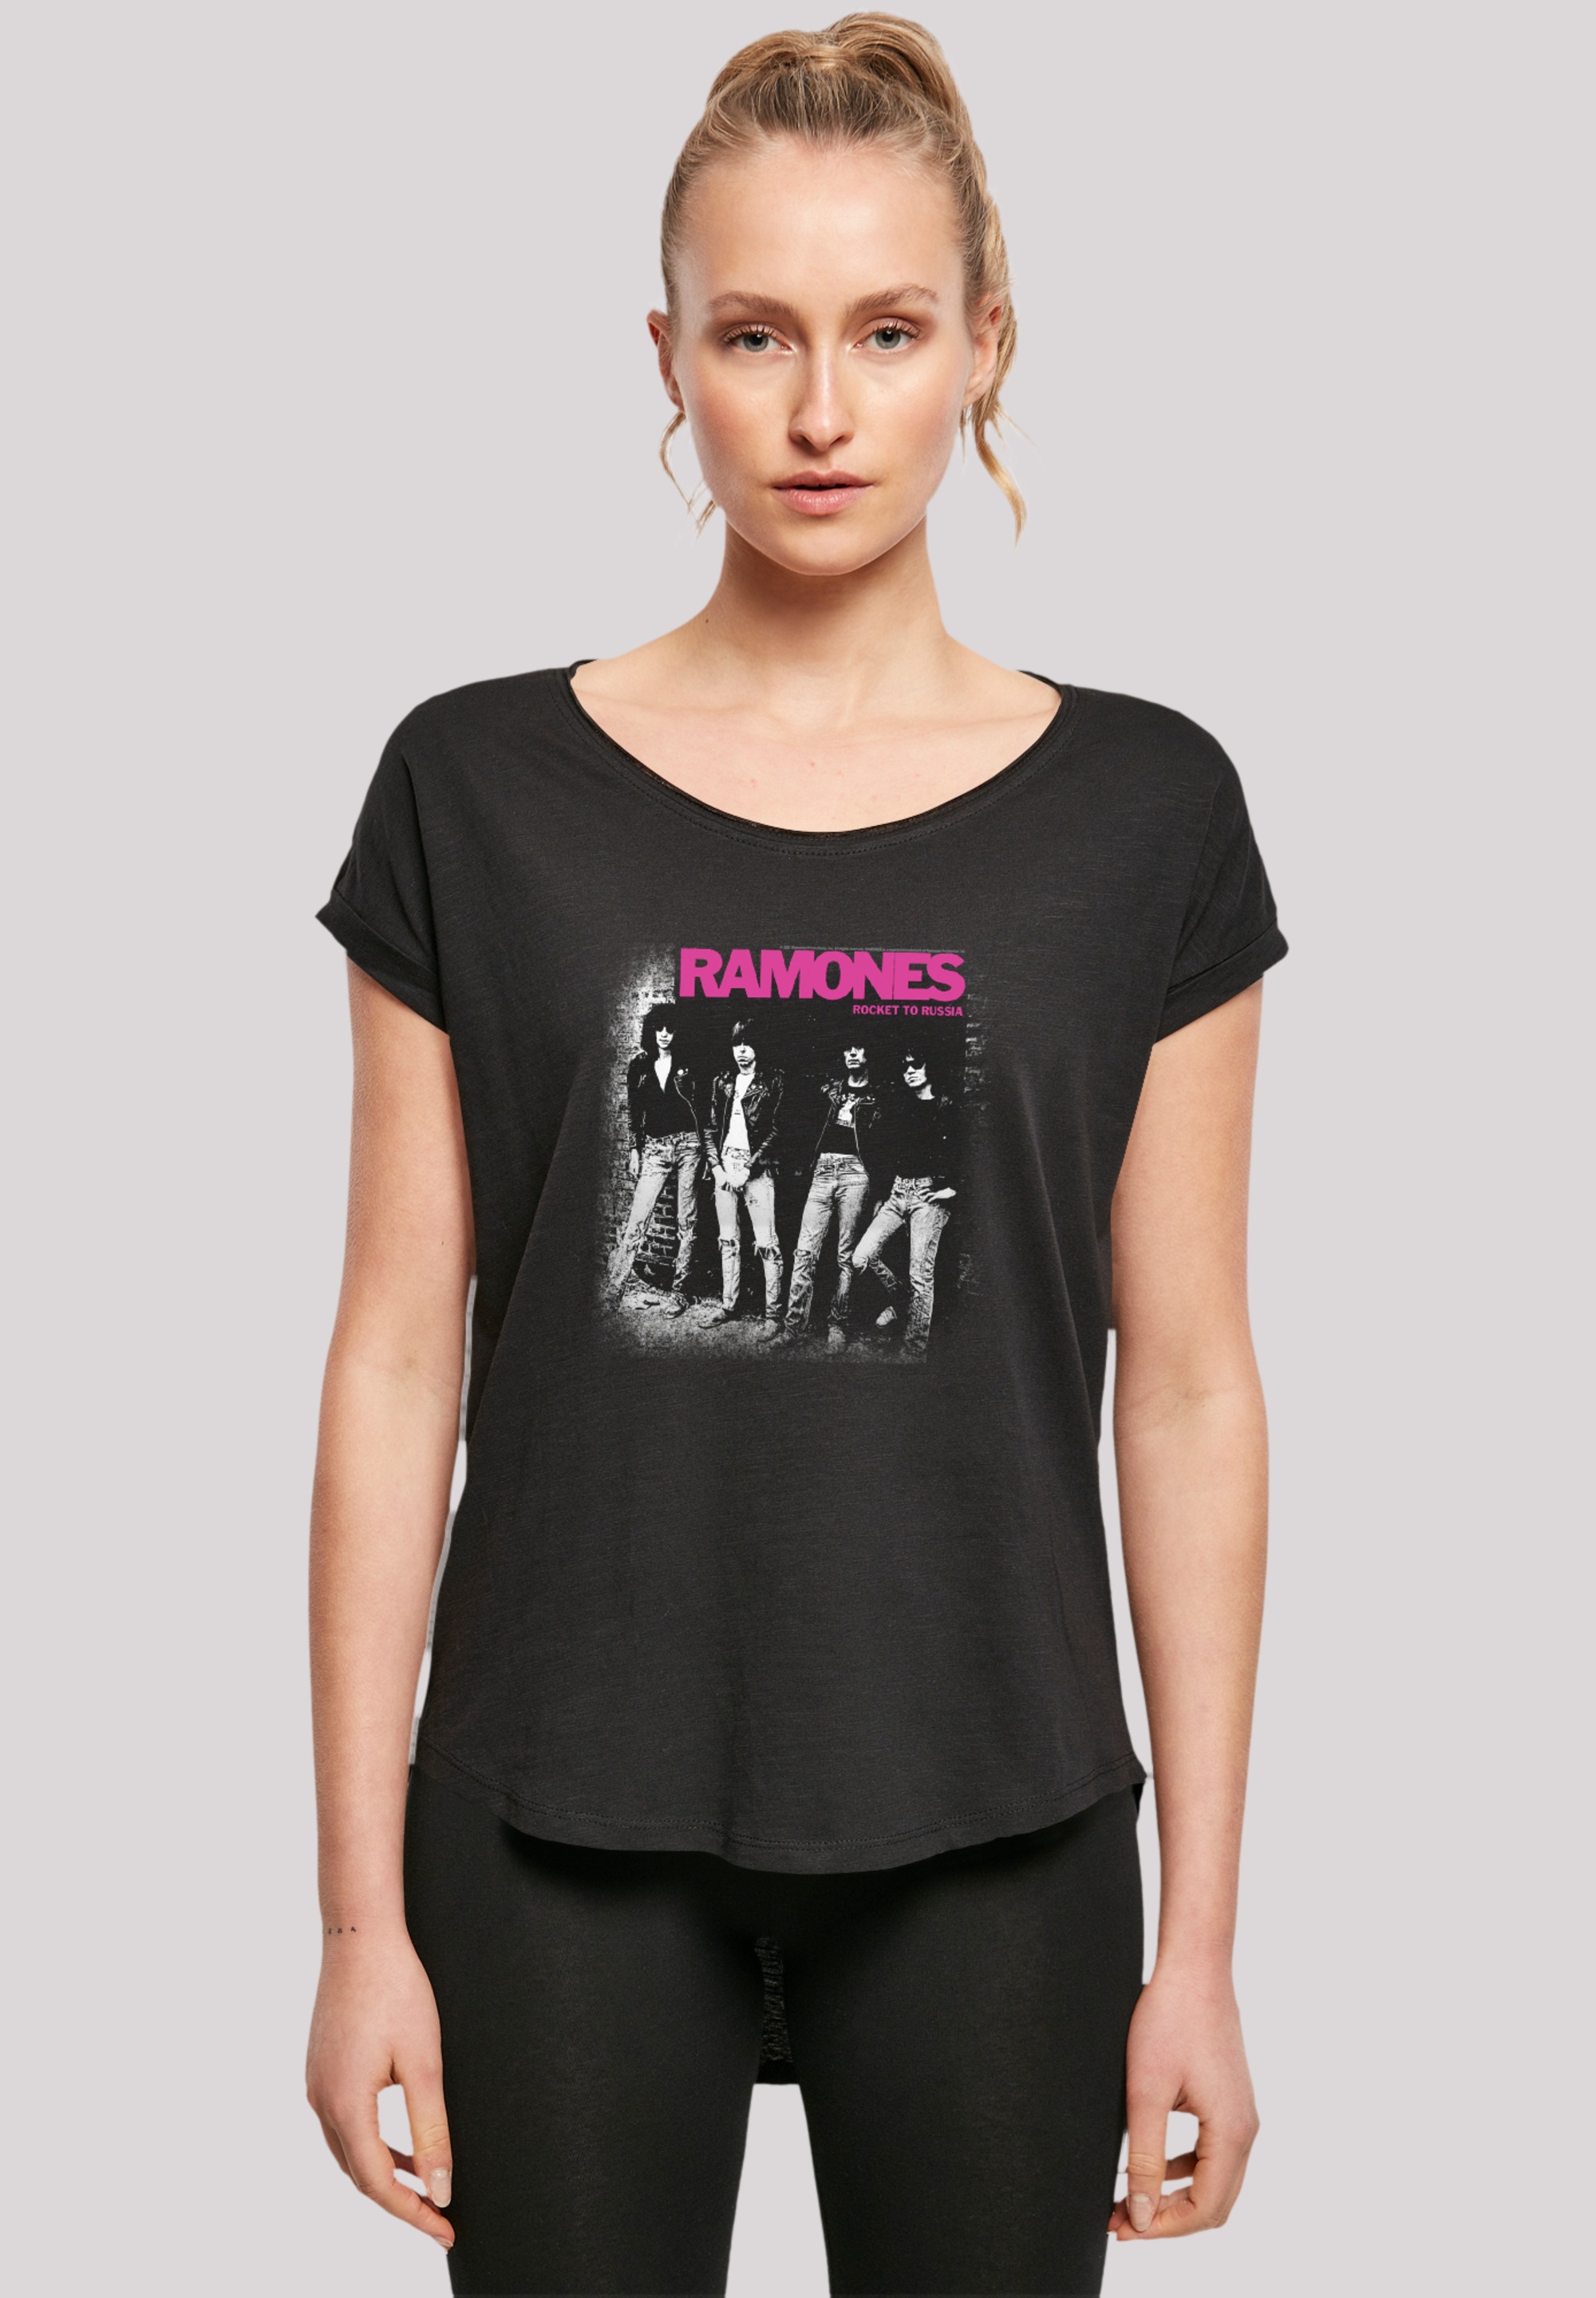 Qualität, Band, T-Shirt Band«, »Ramones Rock-Musik BAUR Rock | für F4NT4STIC kaufen Musik Premium